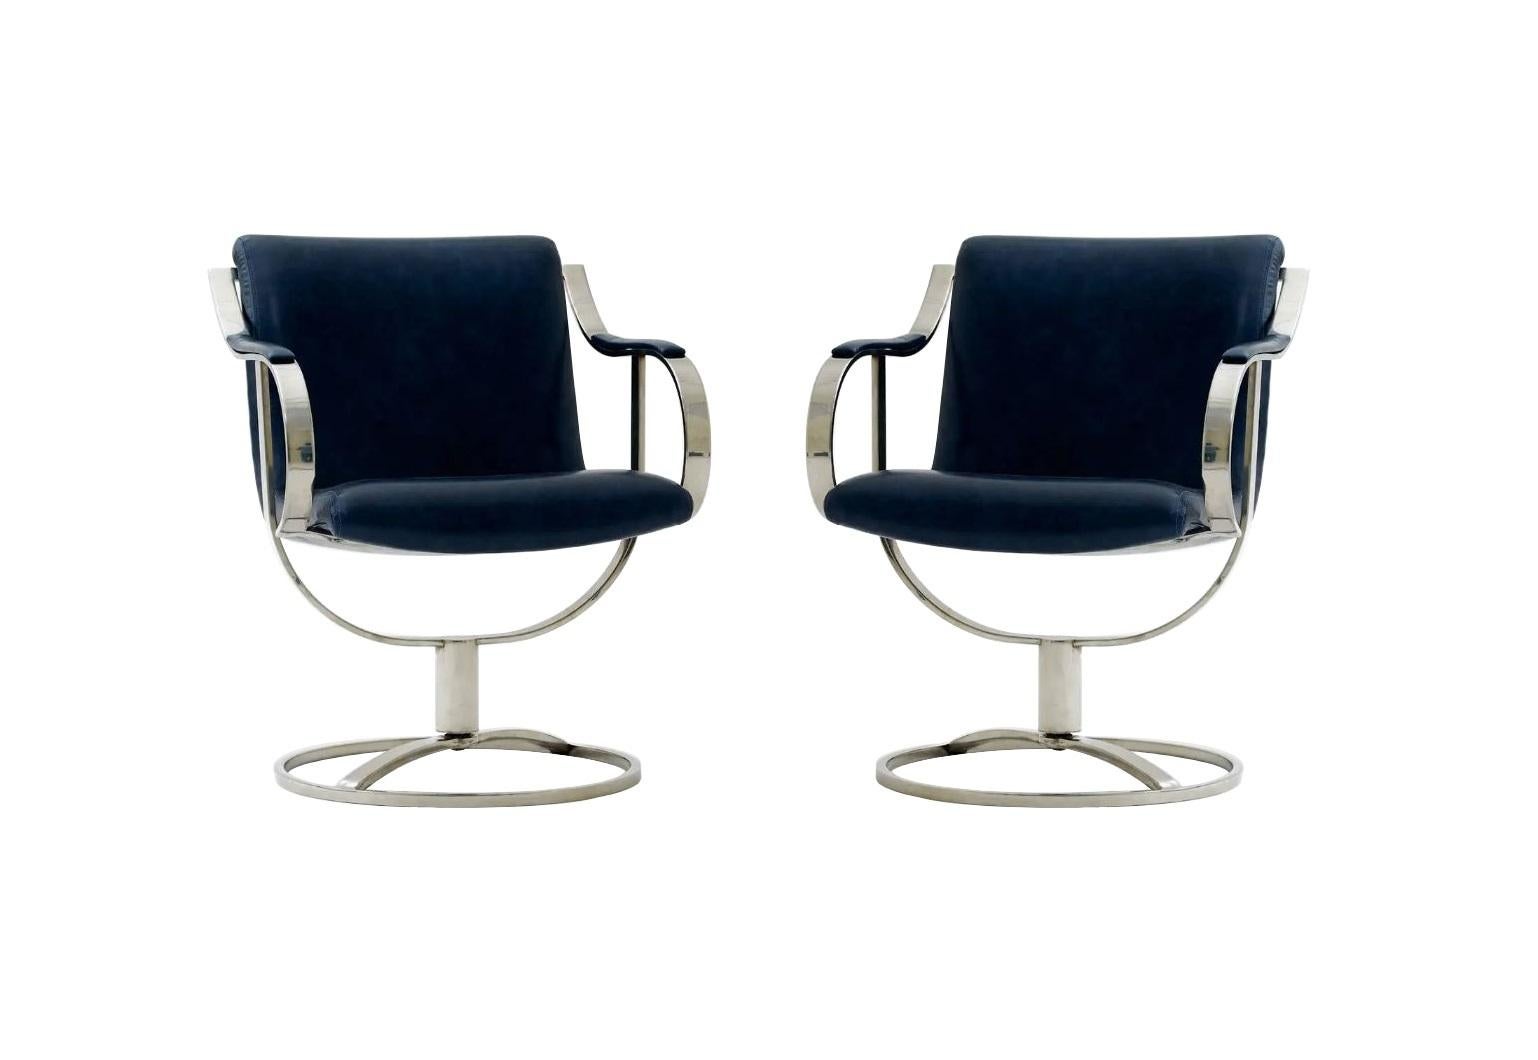 Une paire de chaises d'appoint bien construites, modèle 455-211, conçues par Gardner Leaver et fabriquées par la société Steelcase Furniture. D'une modernité rafraîchissante, le design audacieux et incurvé et les cadres sculpturaux en acier chromé